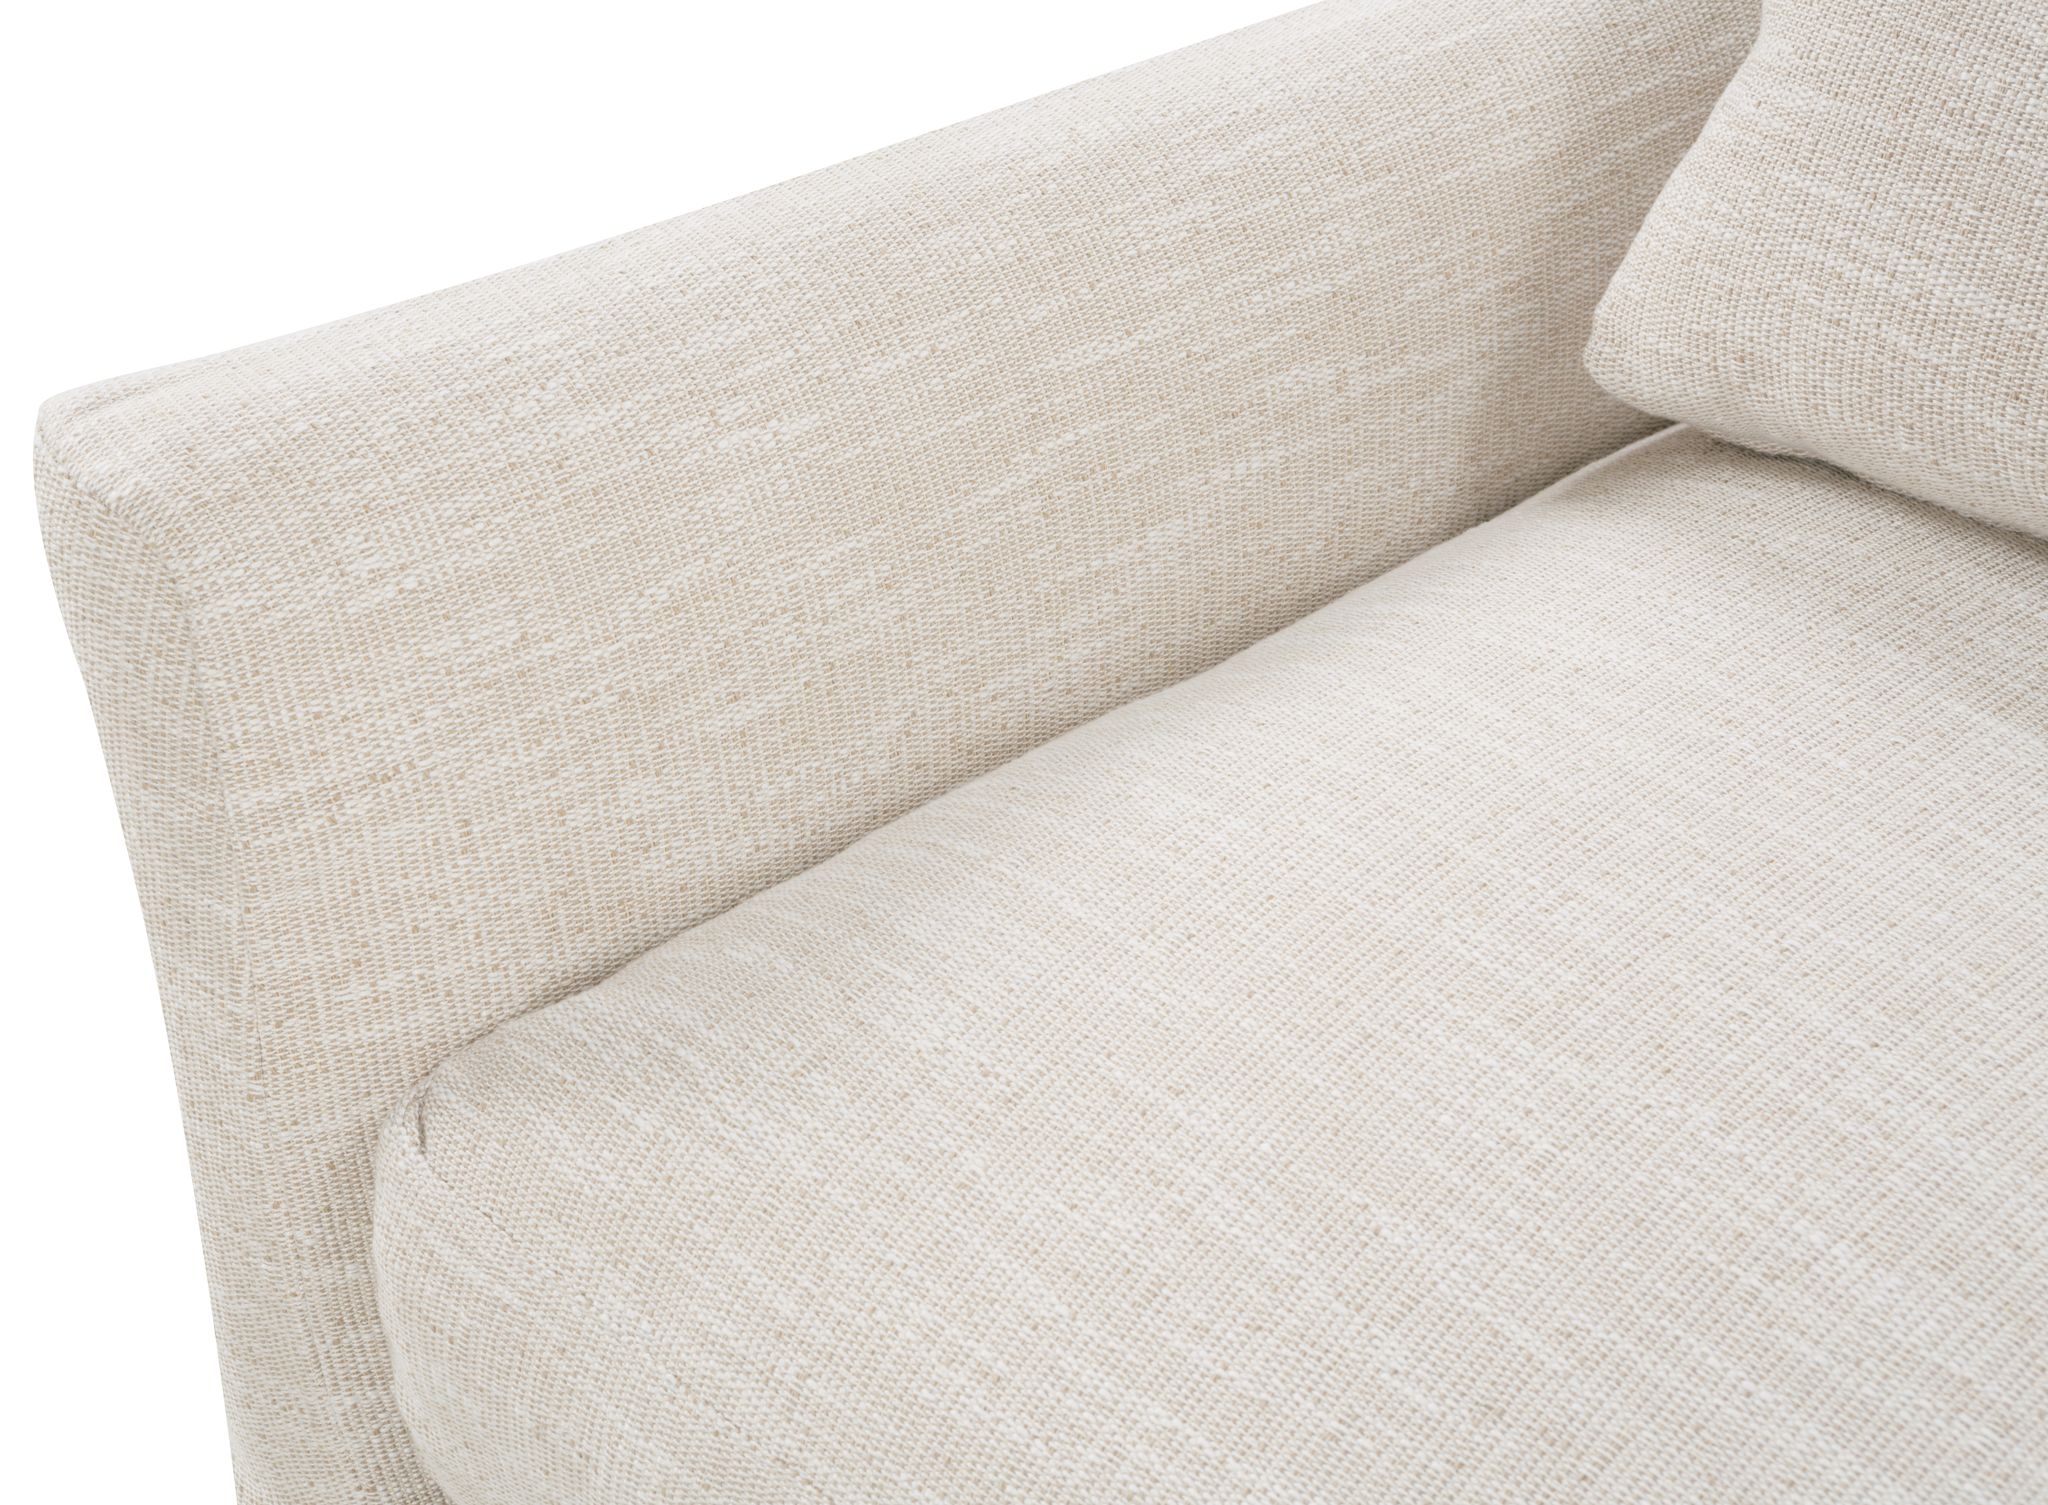 Fraser Slipcover Sofa, Bench Cushion, White, 95" - Image 11